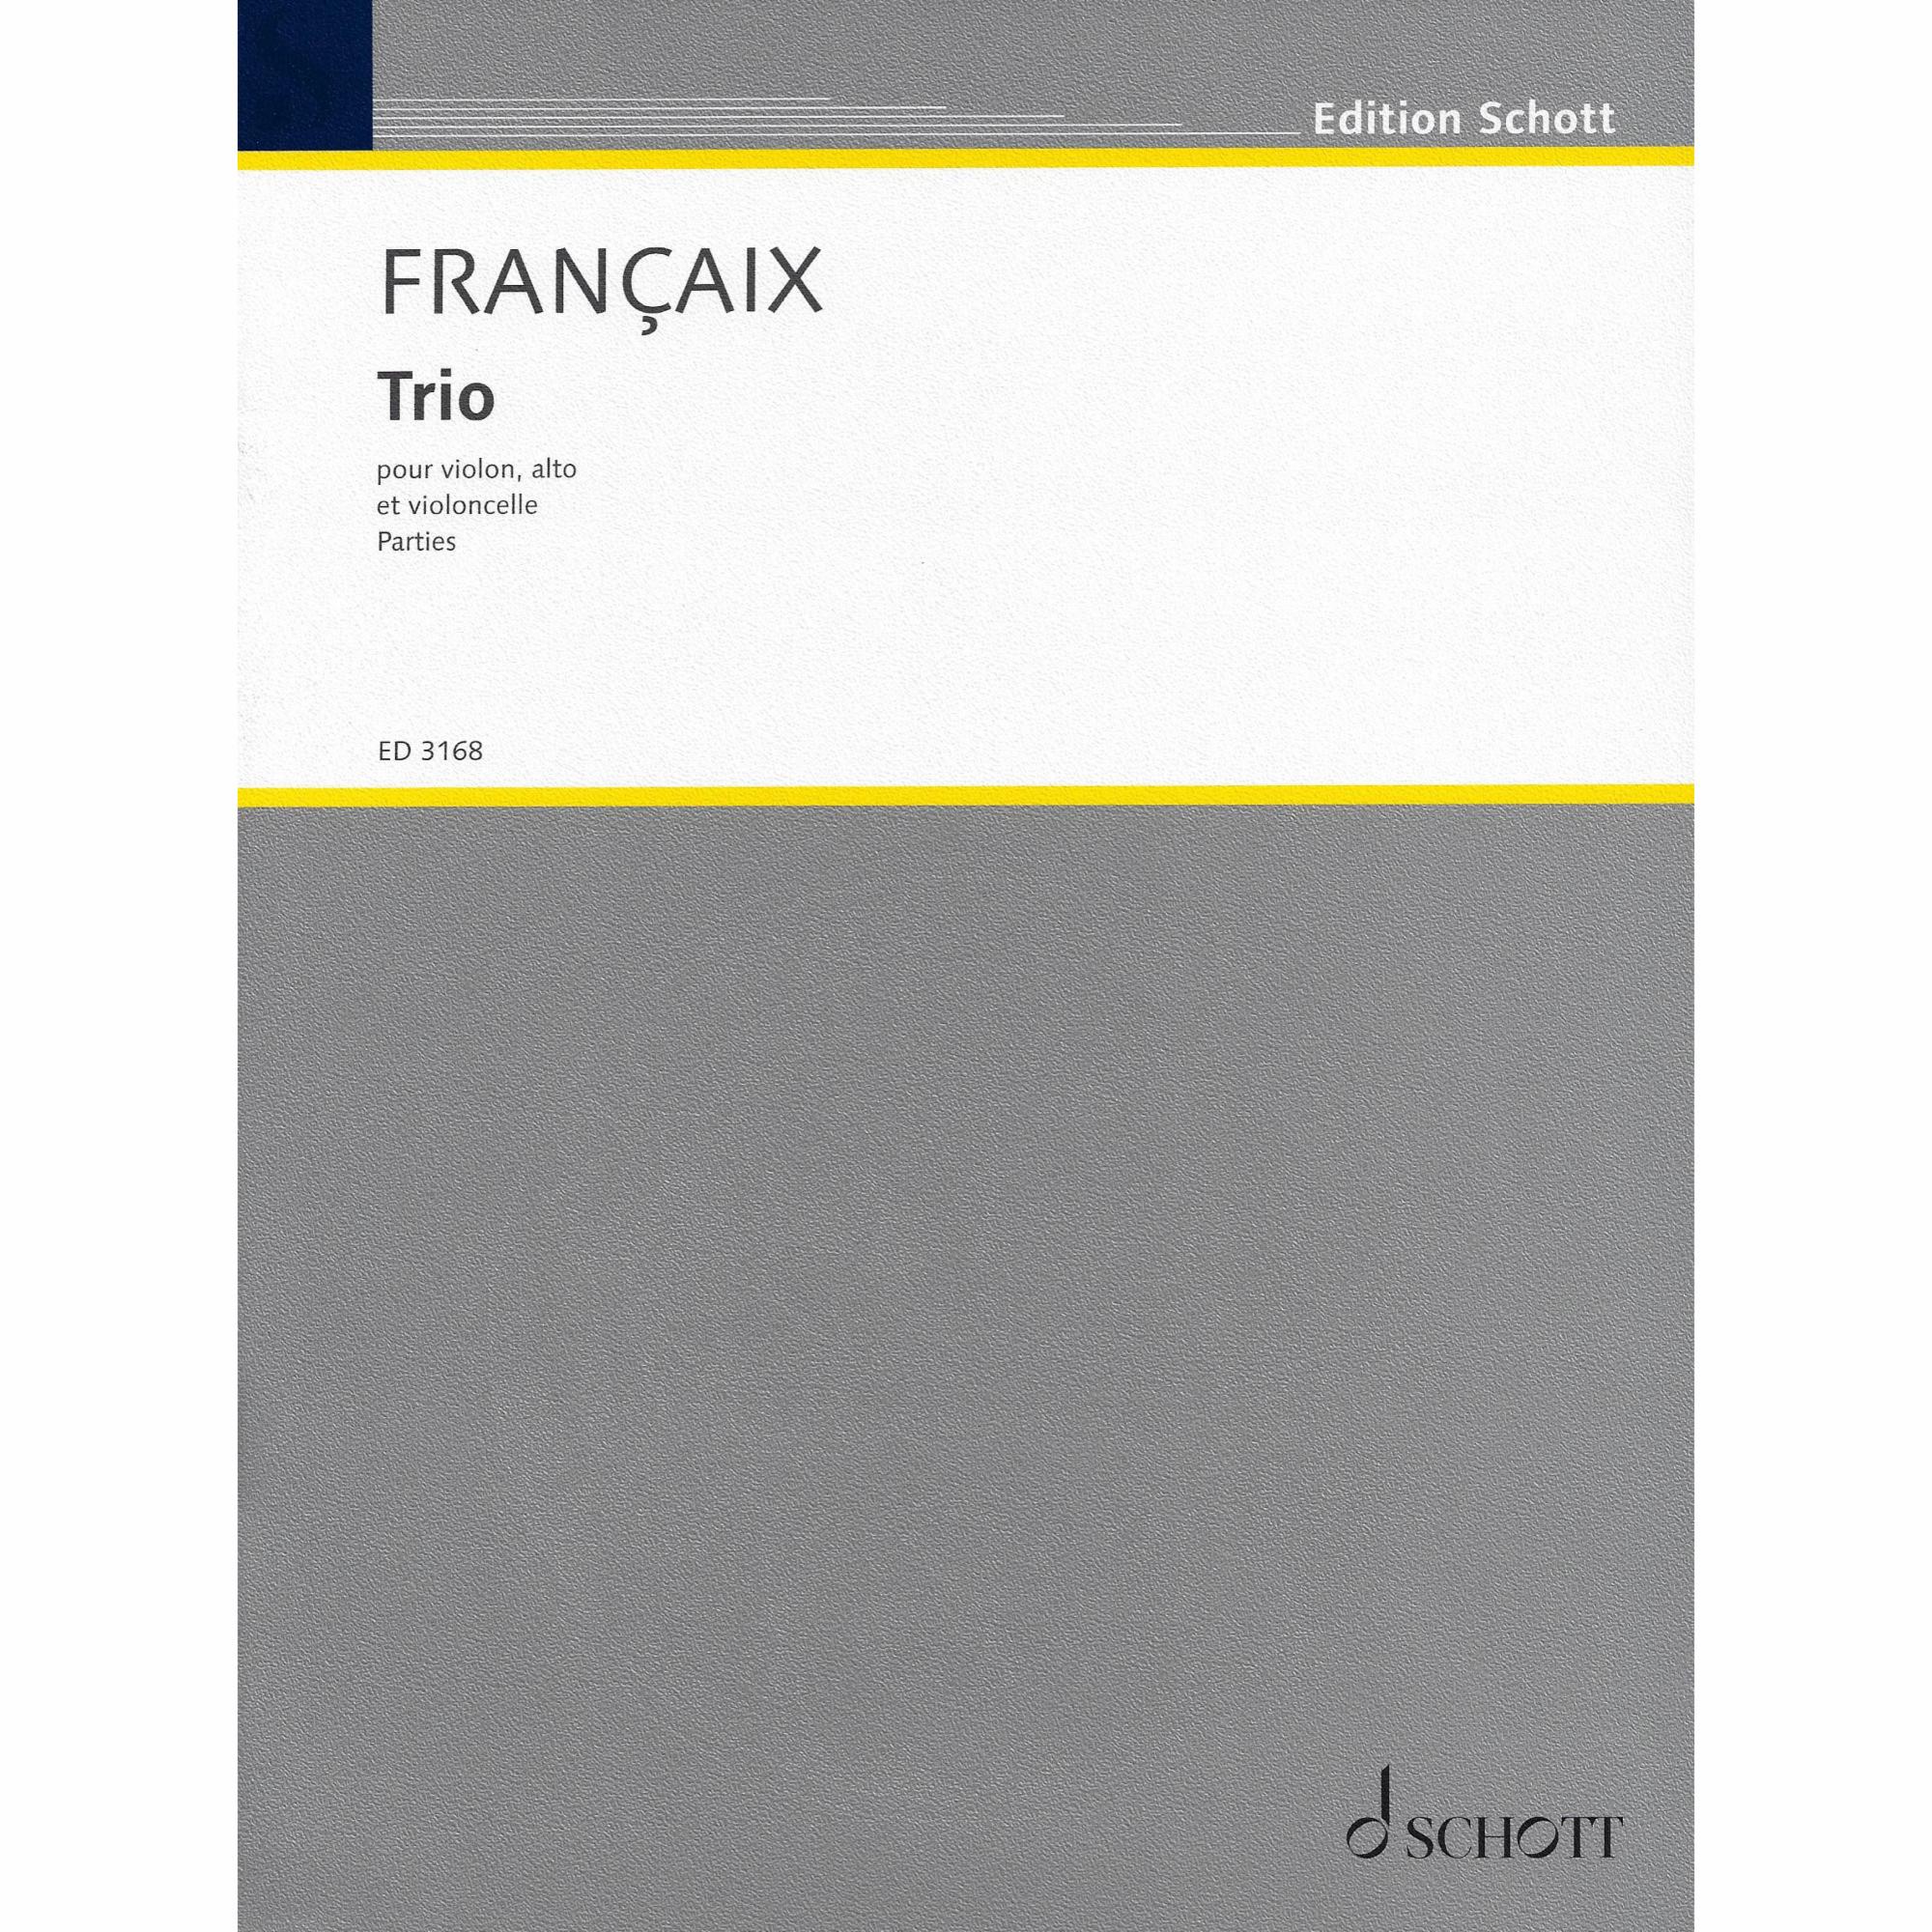 Francaix -- Trio for Violin, Viola, and Cello